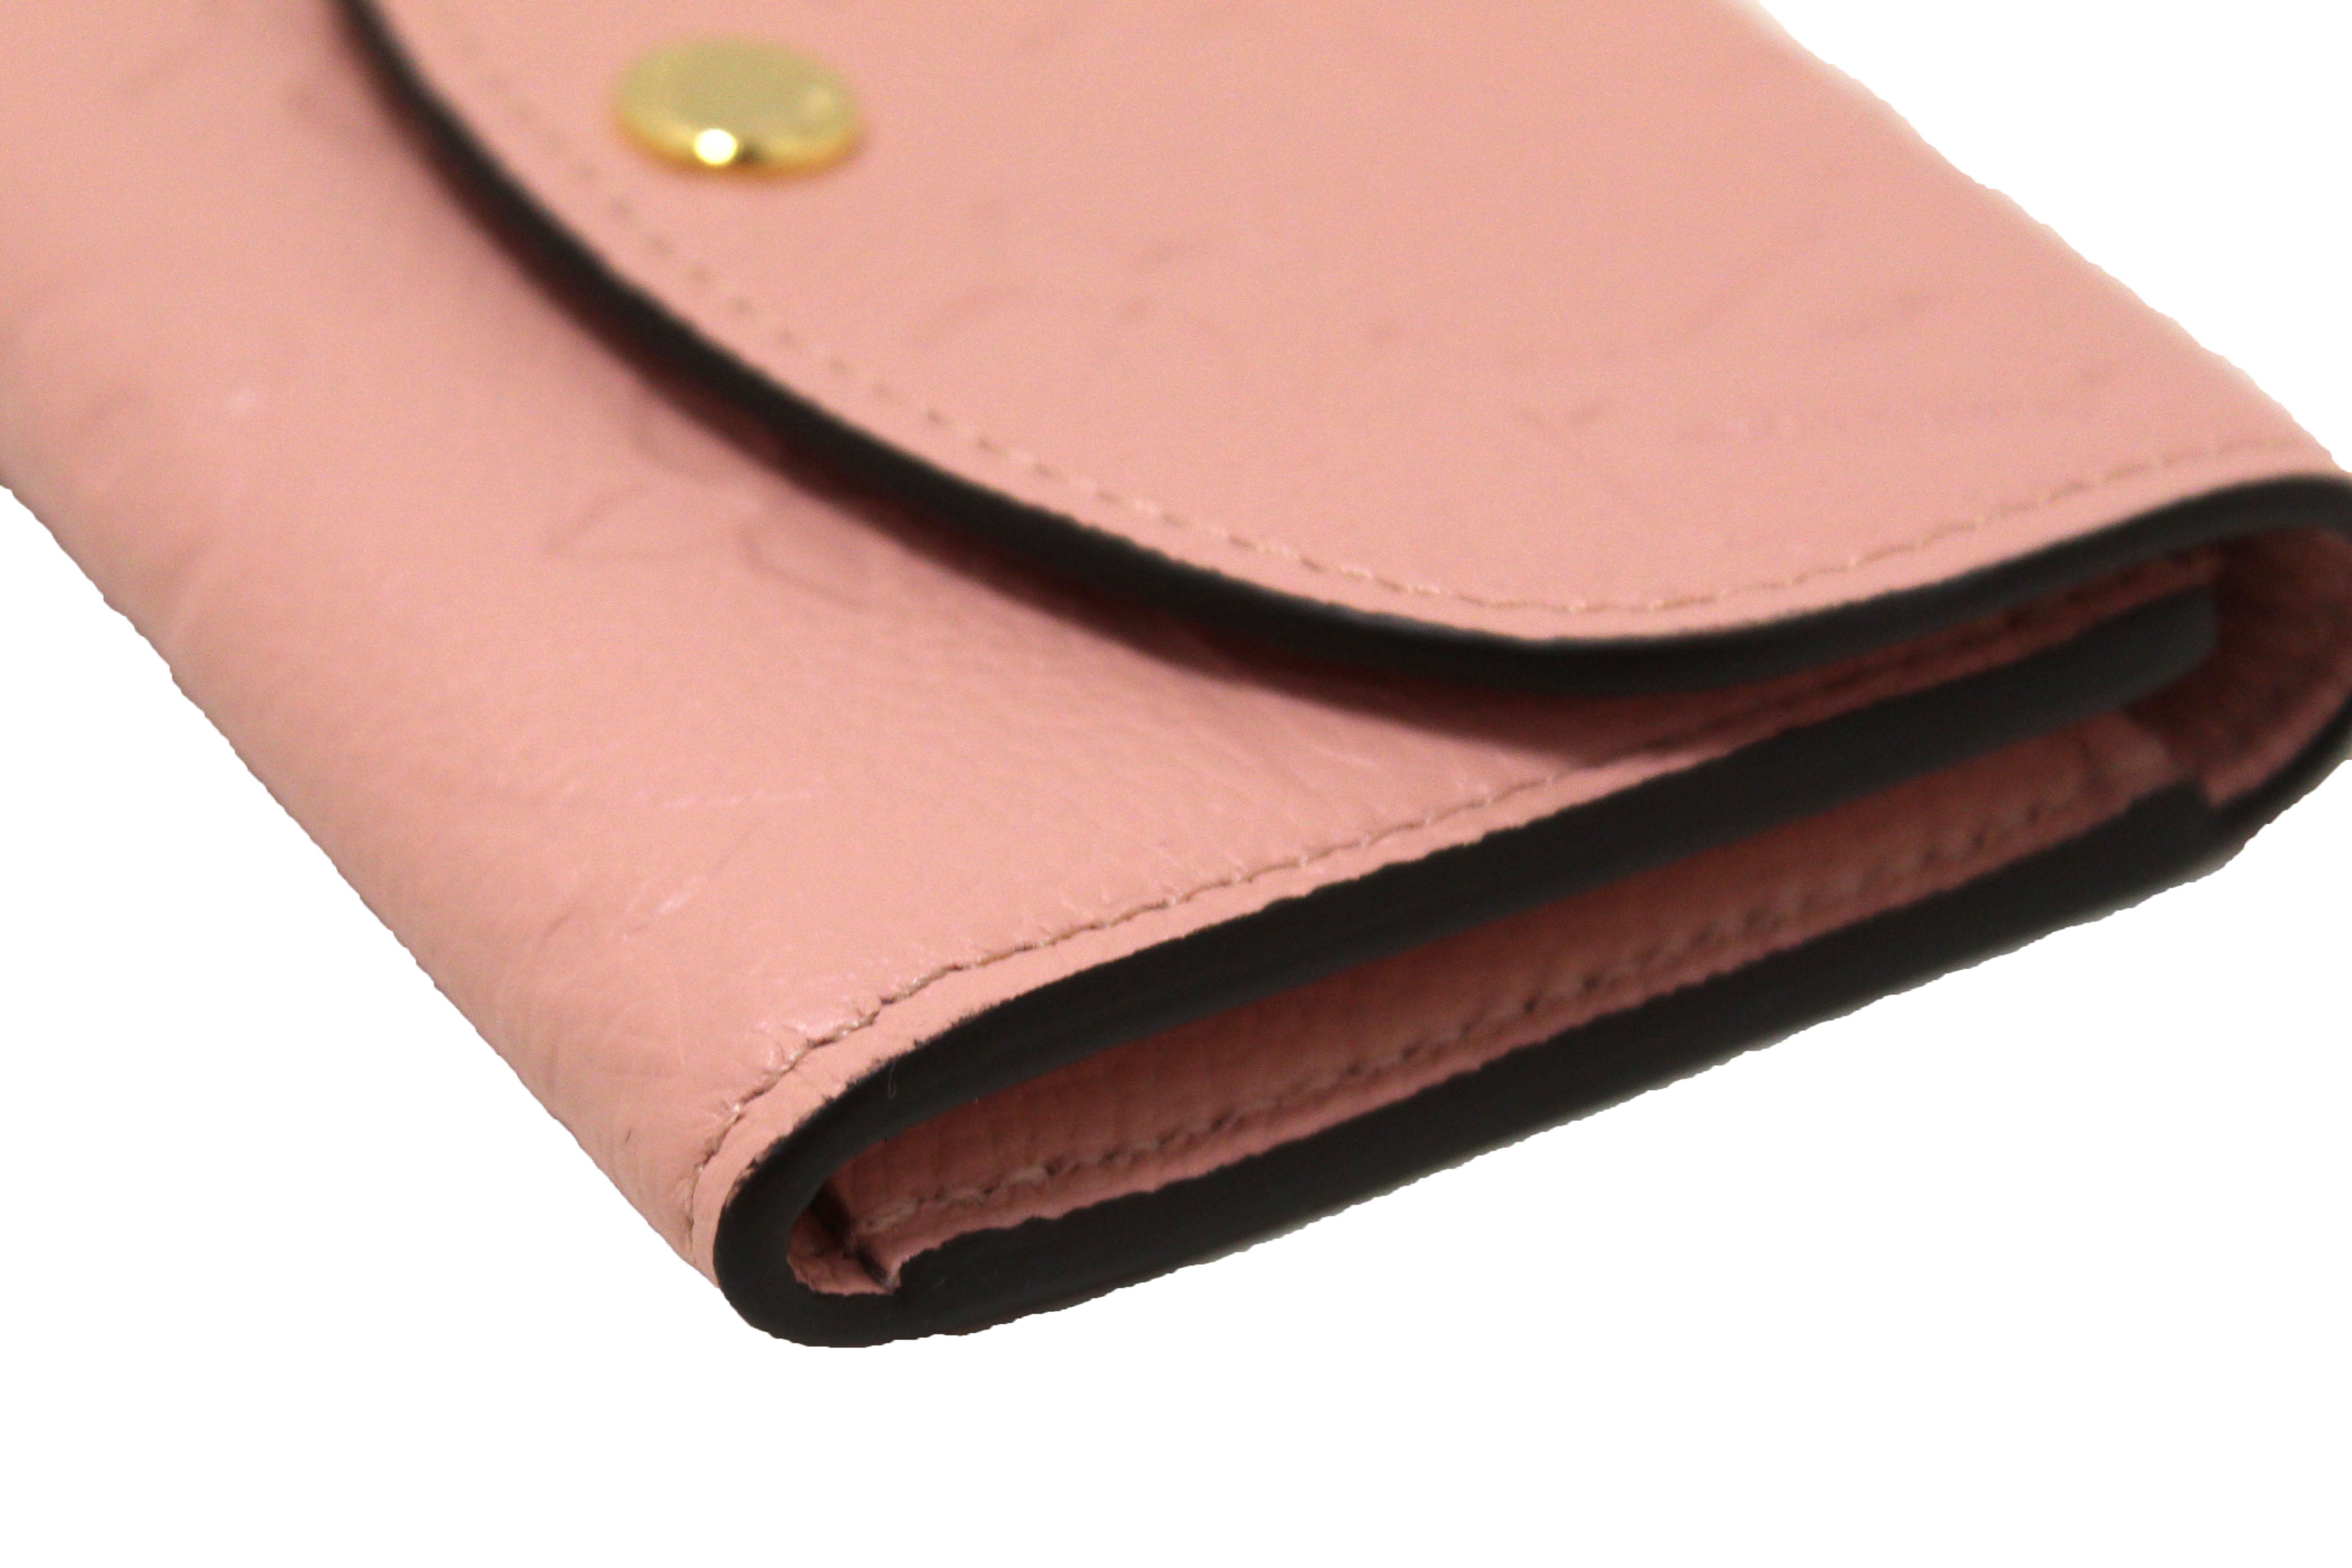 Authentic Louis Vuitton Pink Monogram Empreinte Leather Rosalie